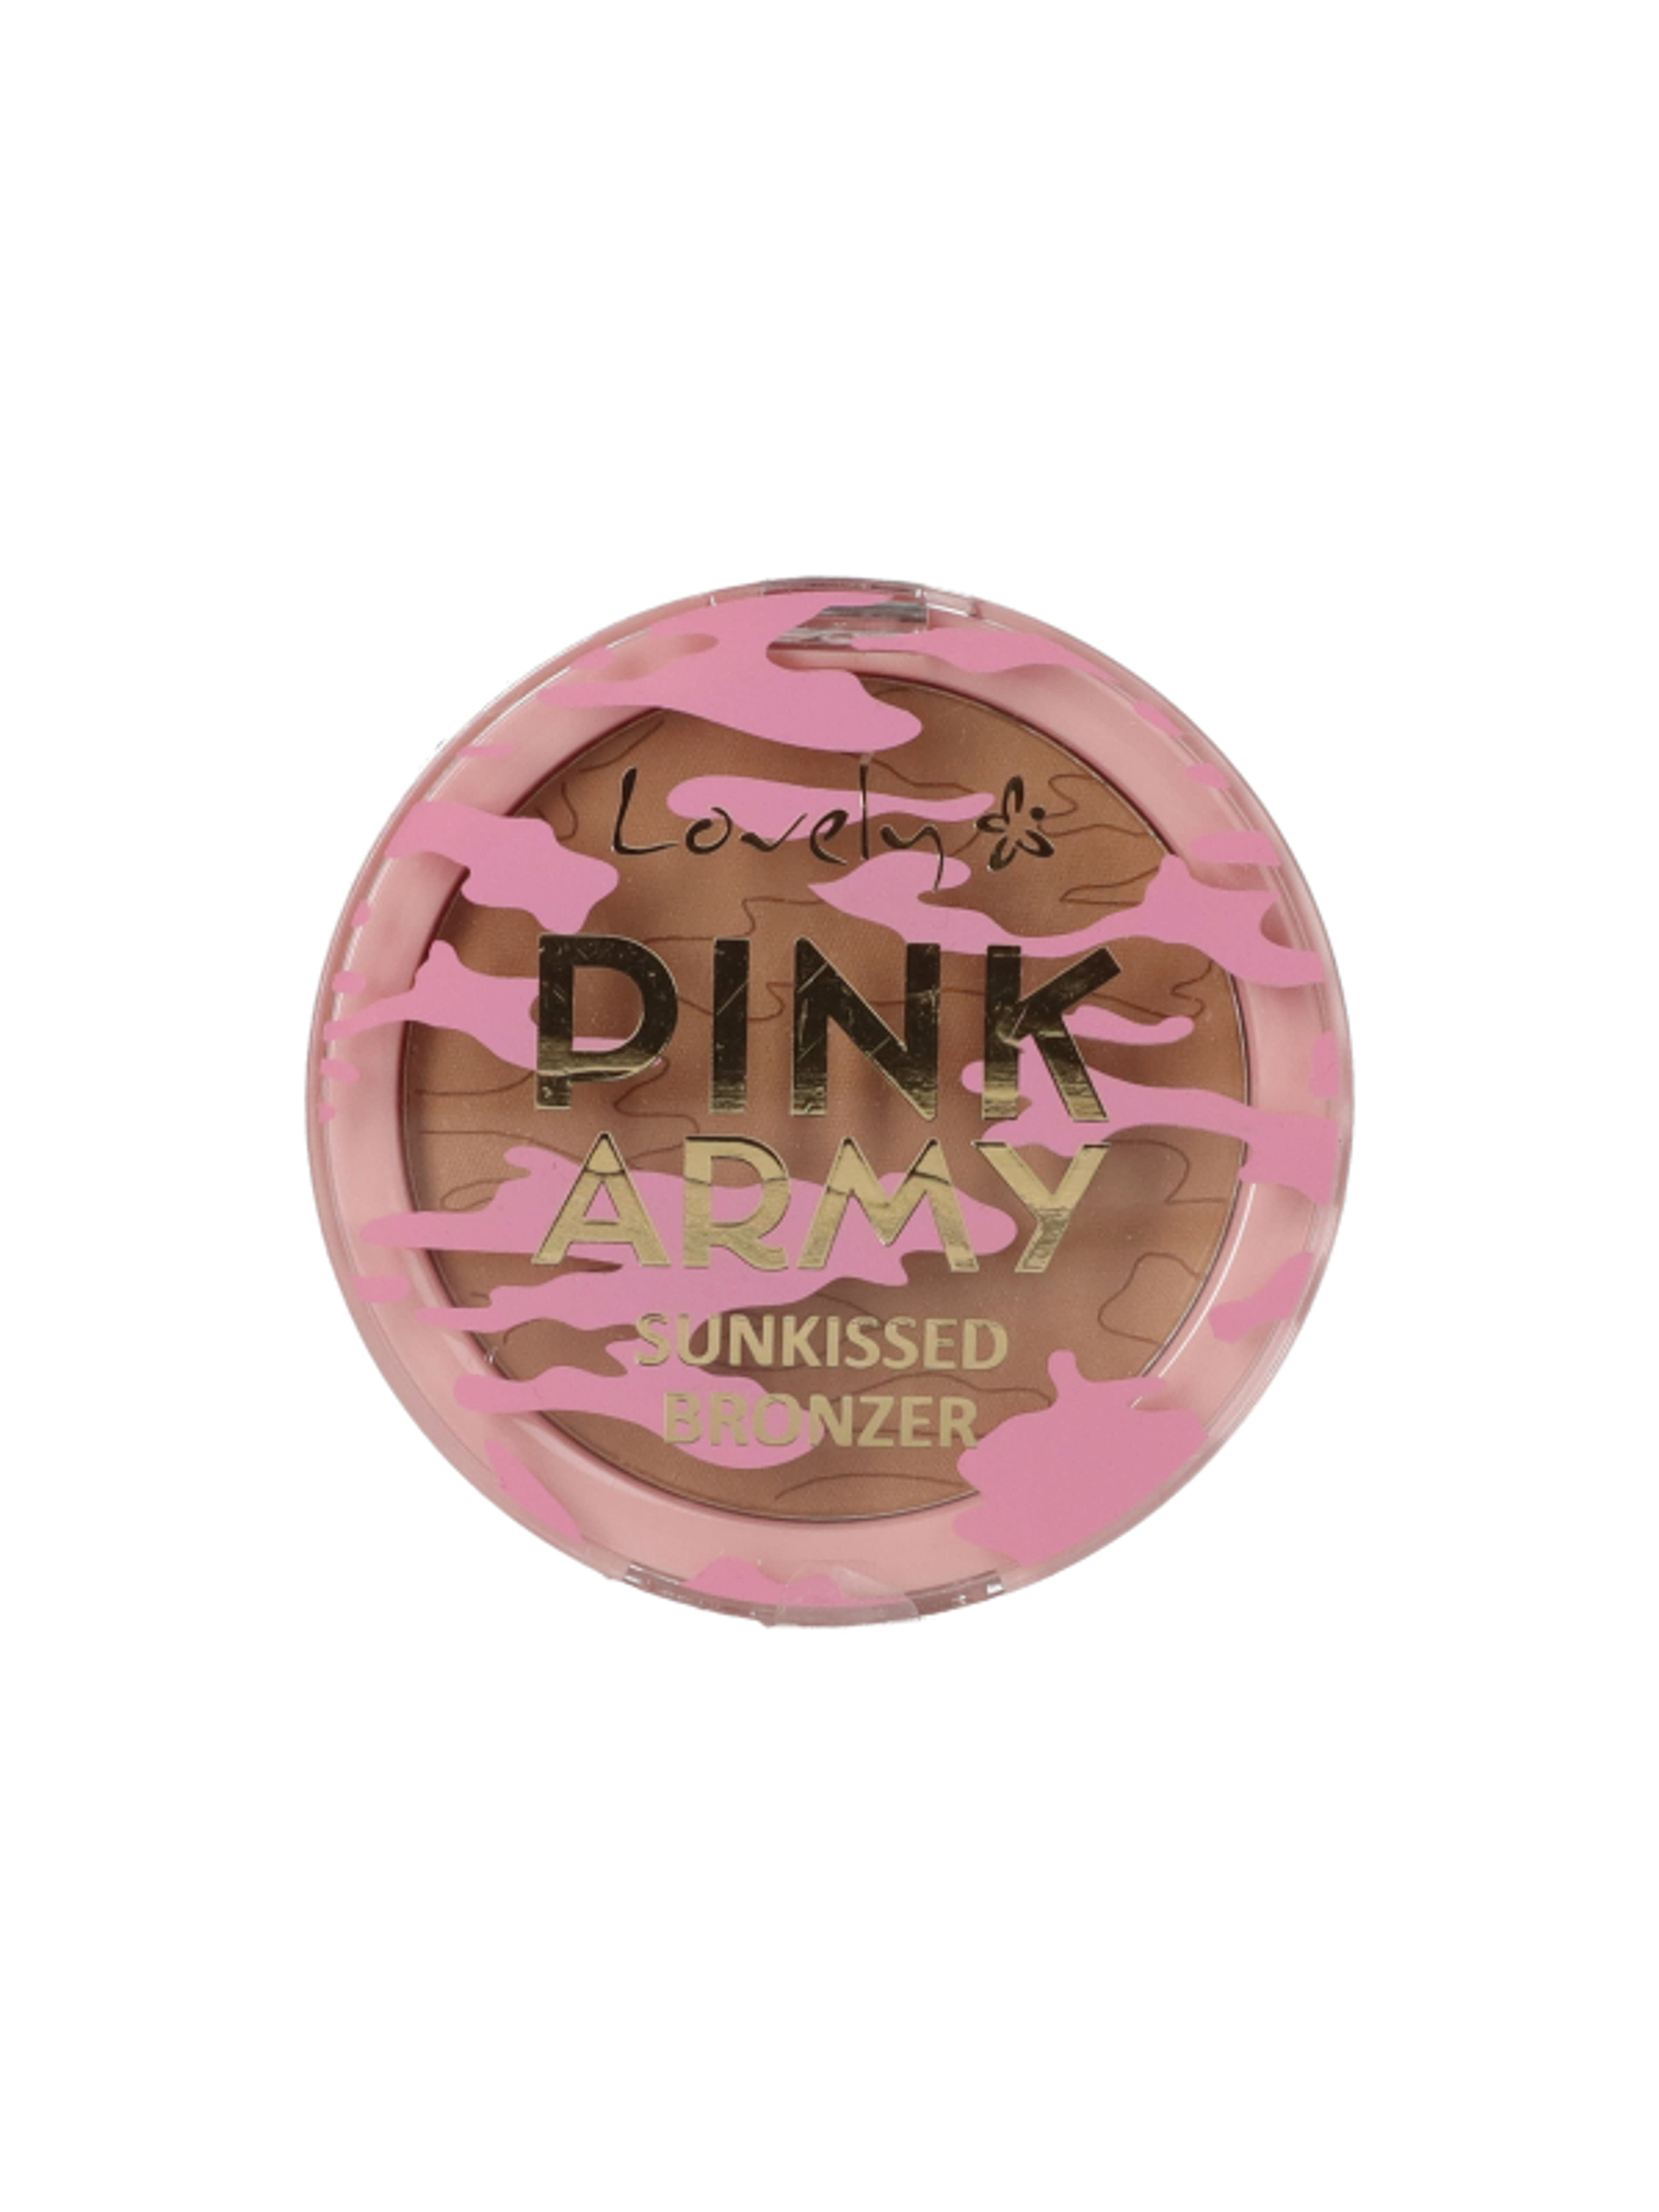 Lovely Sun Kissed Pink Army bronzosíó - 1 db